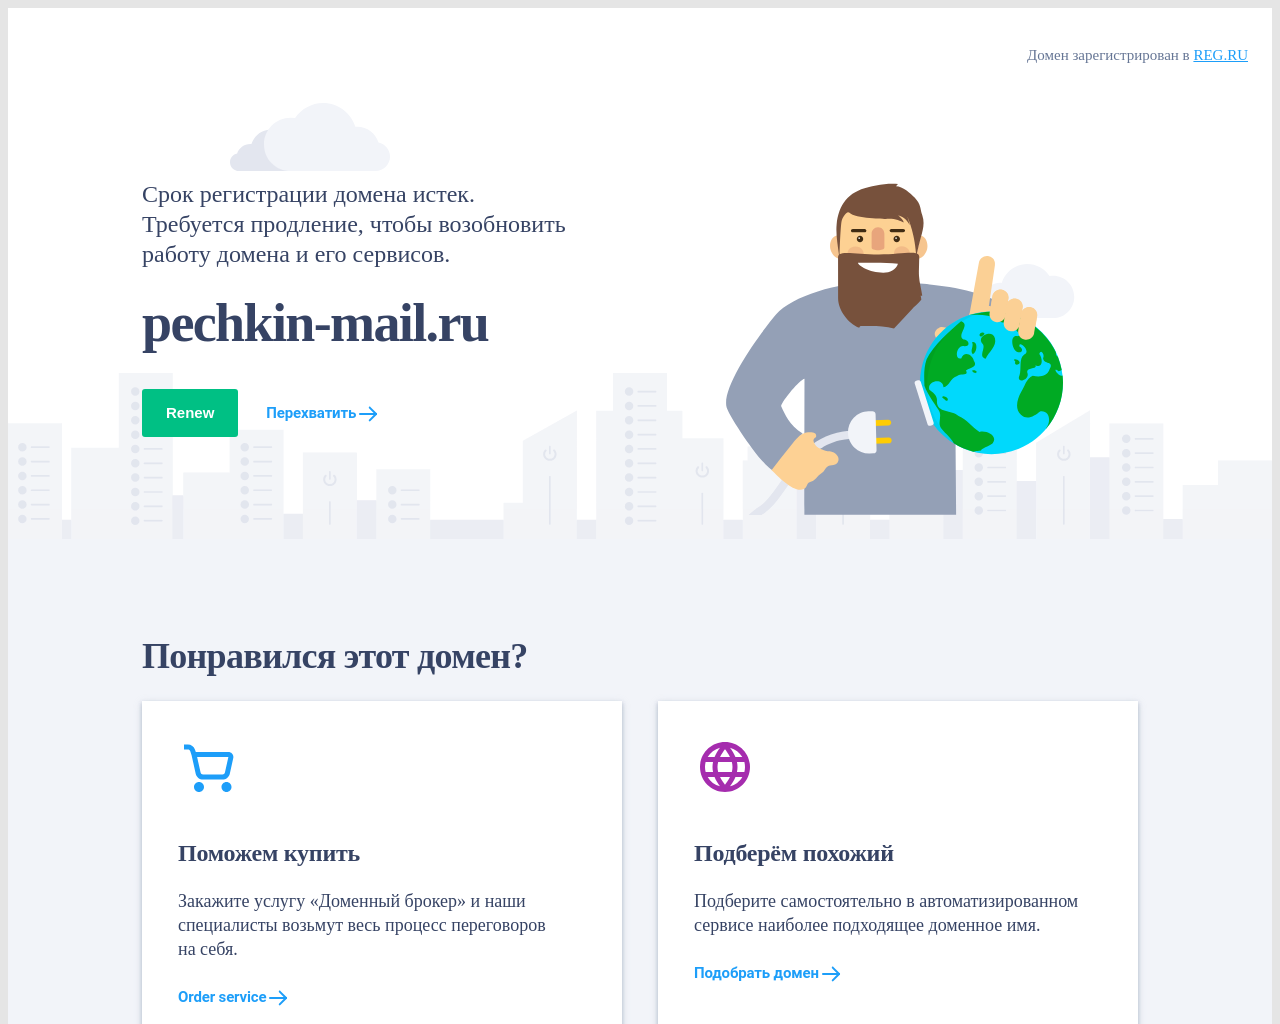 pechkin-mail.ru